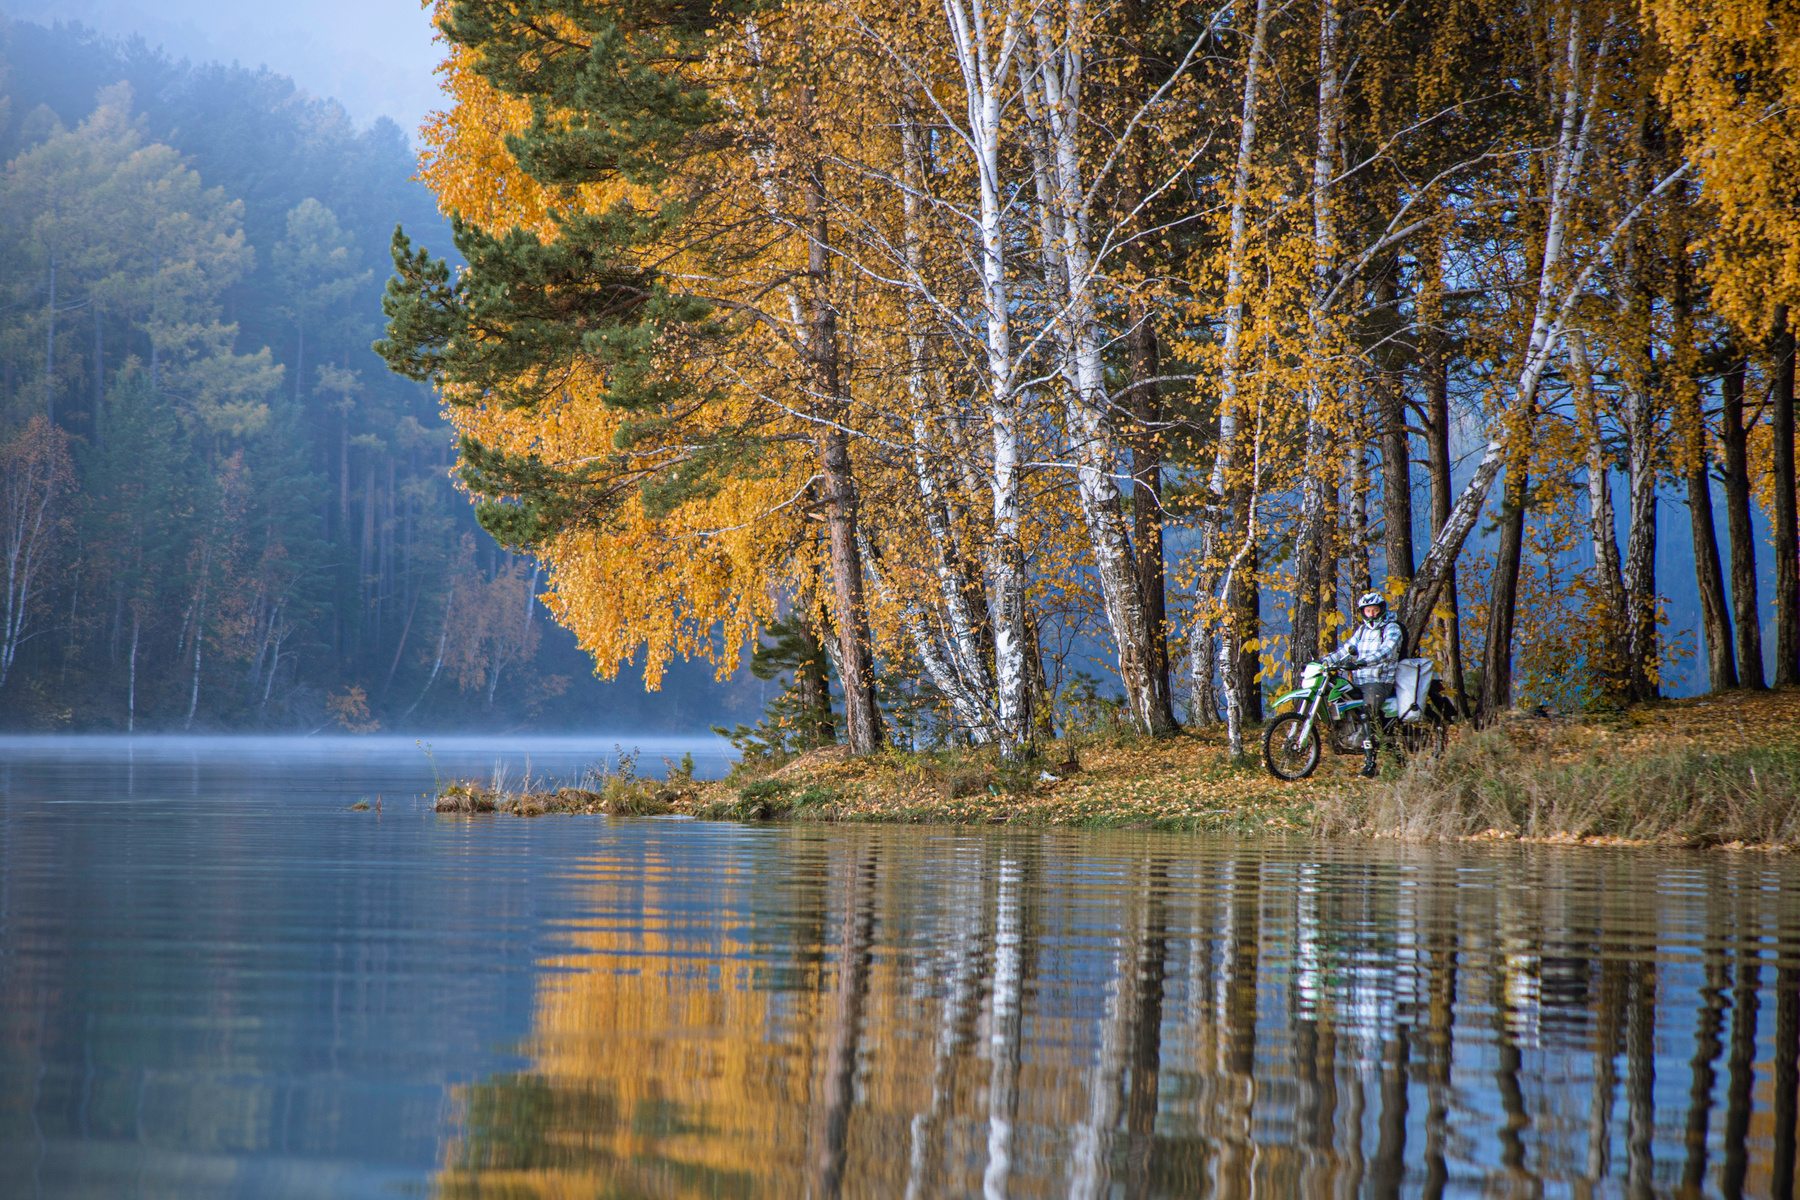 Ангарские заливы эндуро берег вода озеро река осень листва отражение мото